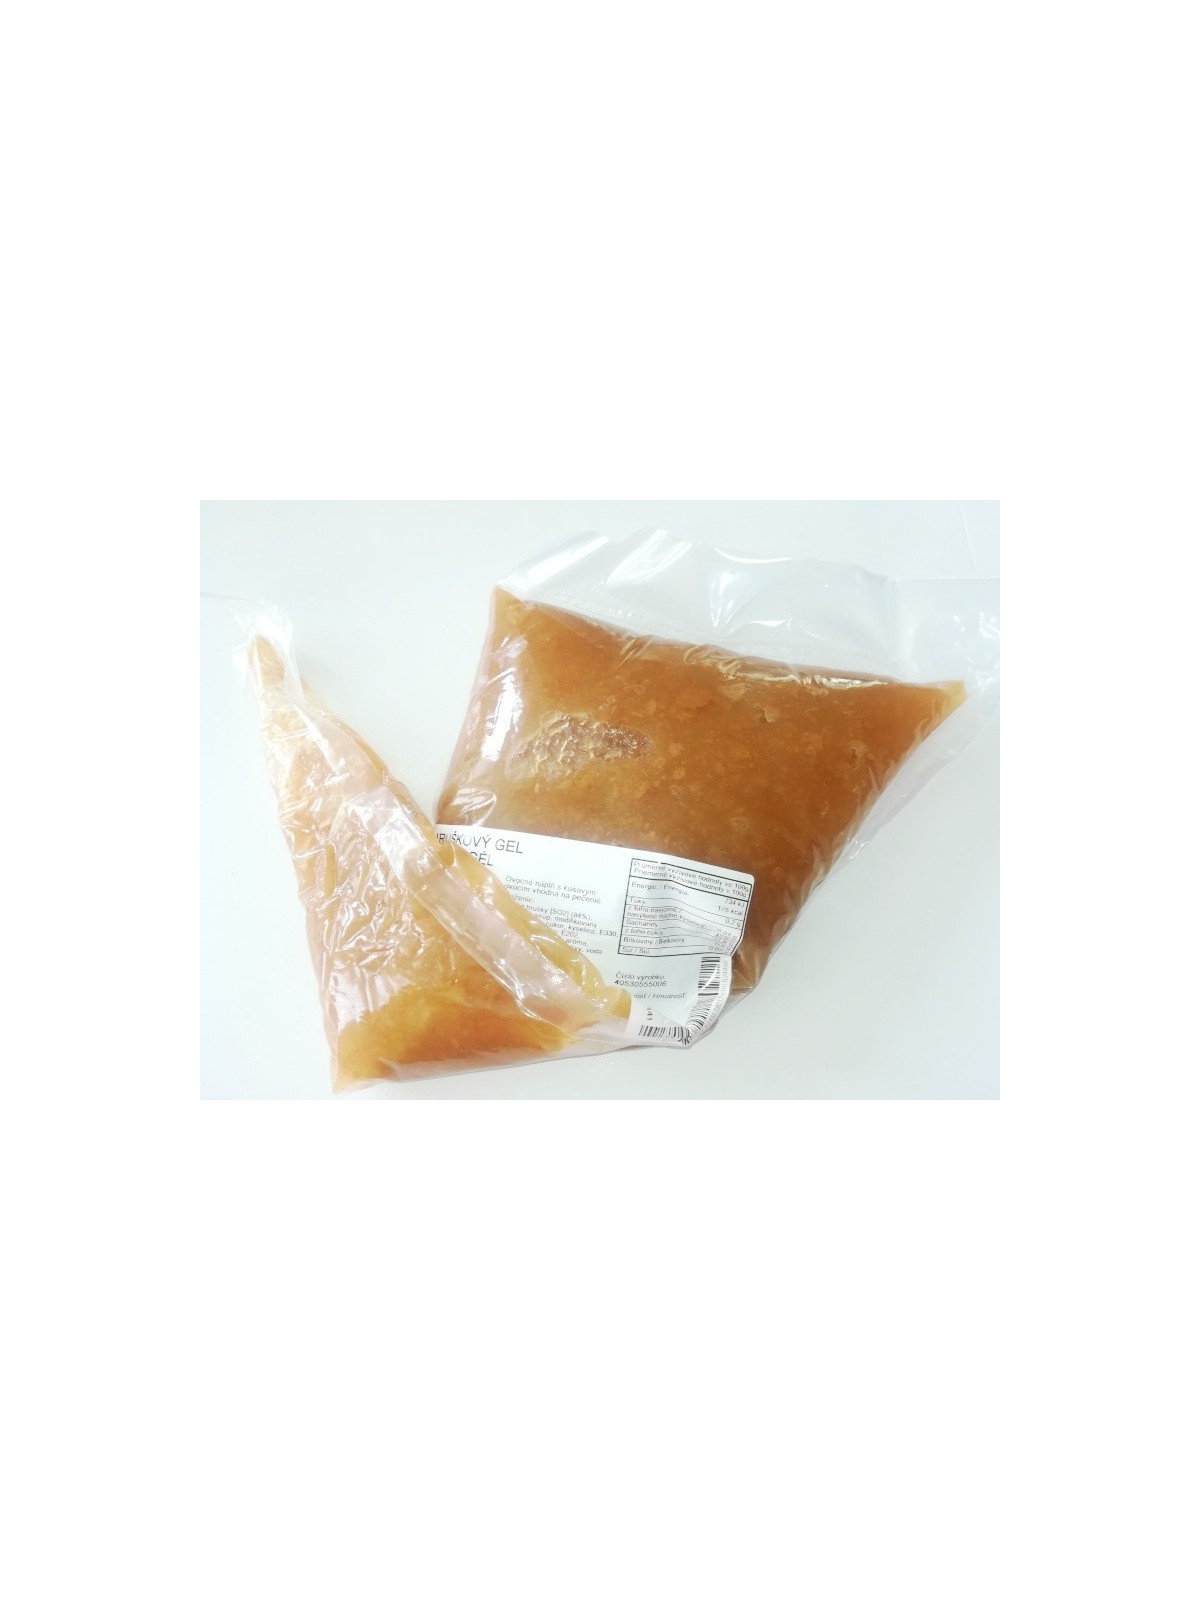 Hruškový gel  - ovocná náplň -  1kg